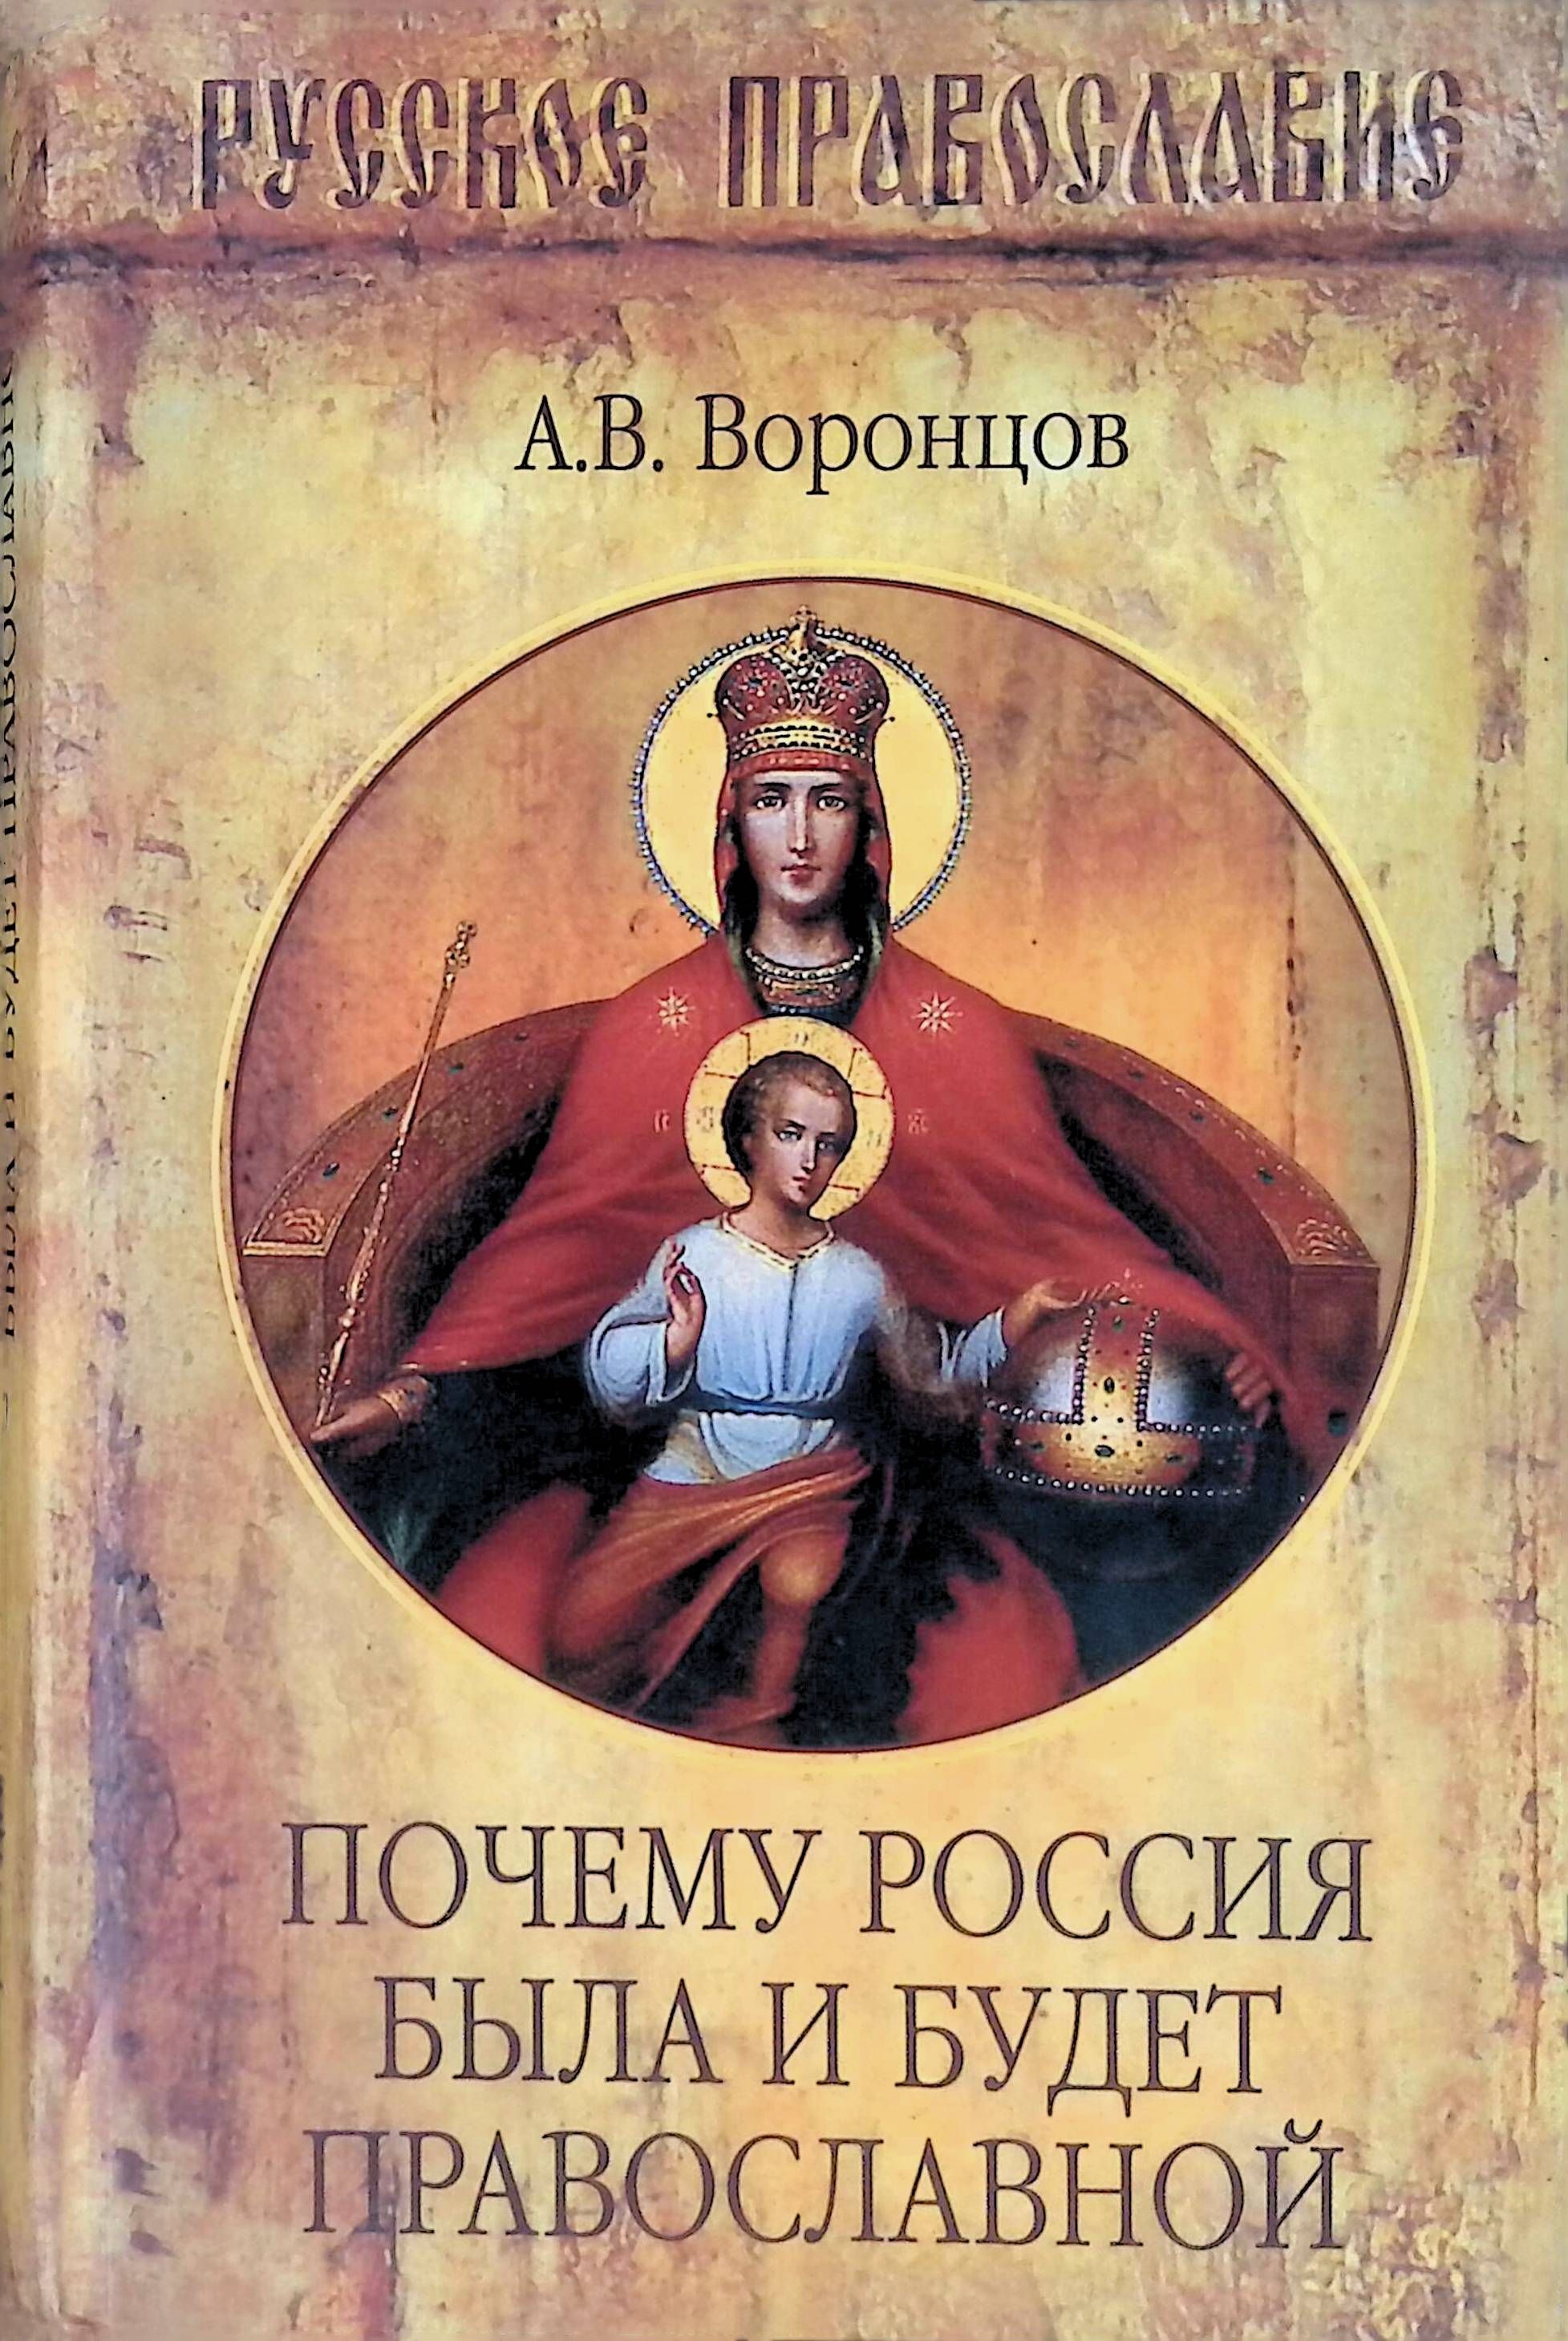 Почему россия православная